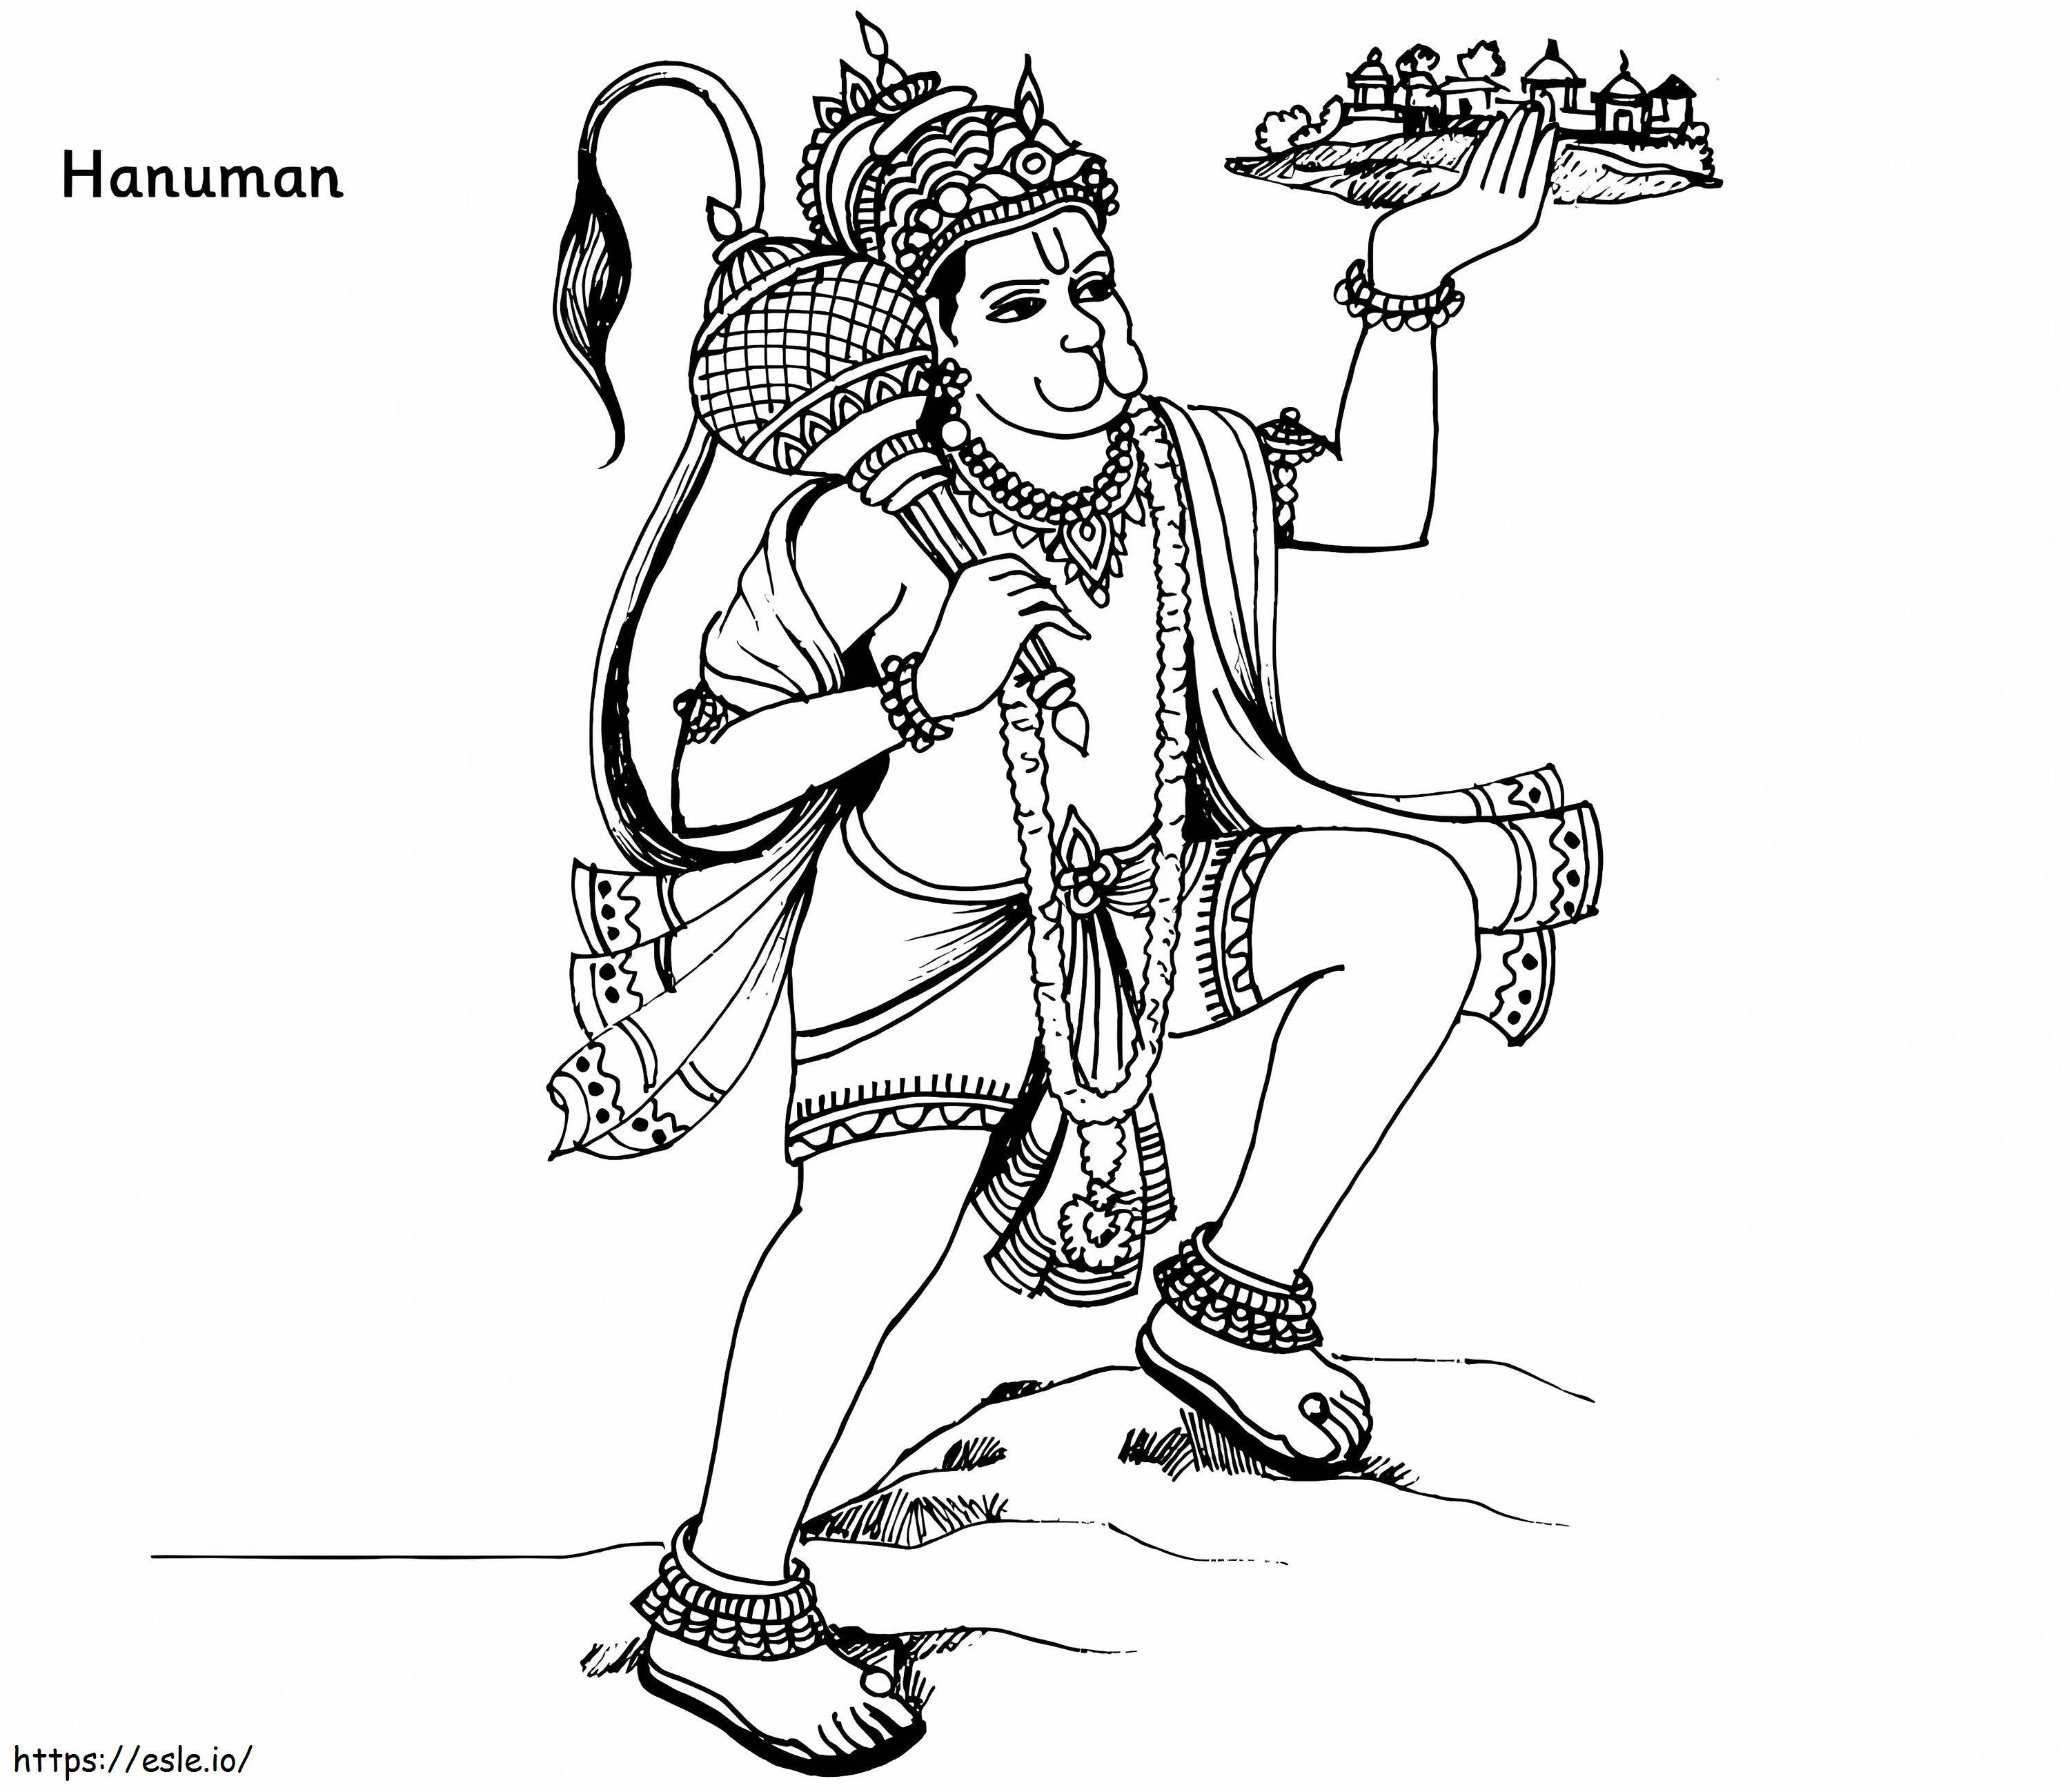 Hanuman coloring page